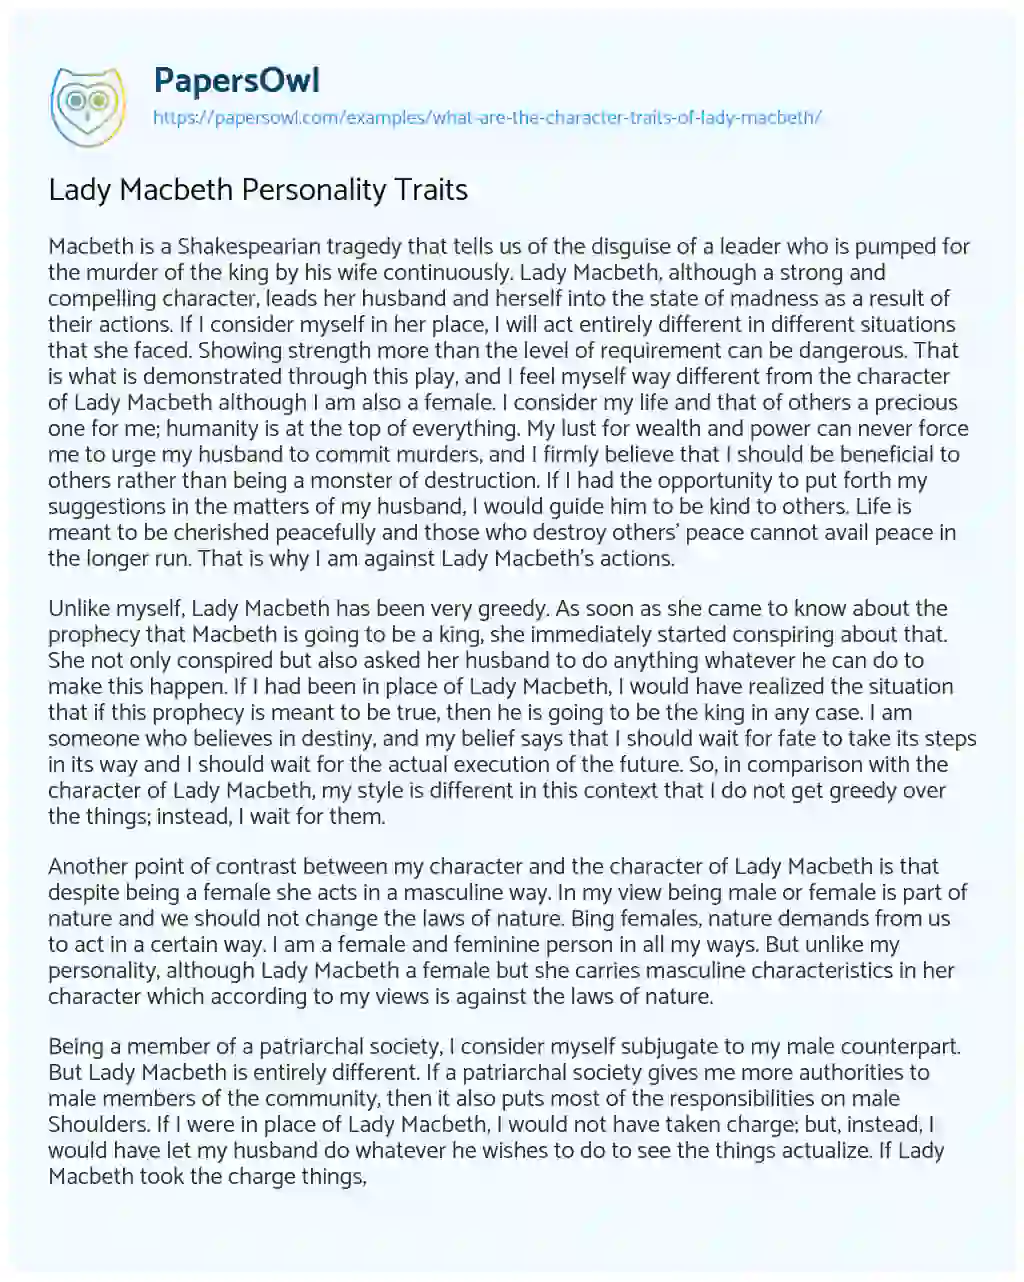 Lady Macbeth Personality Traits essay